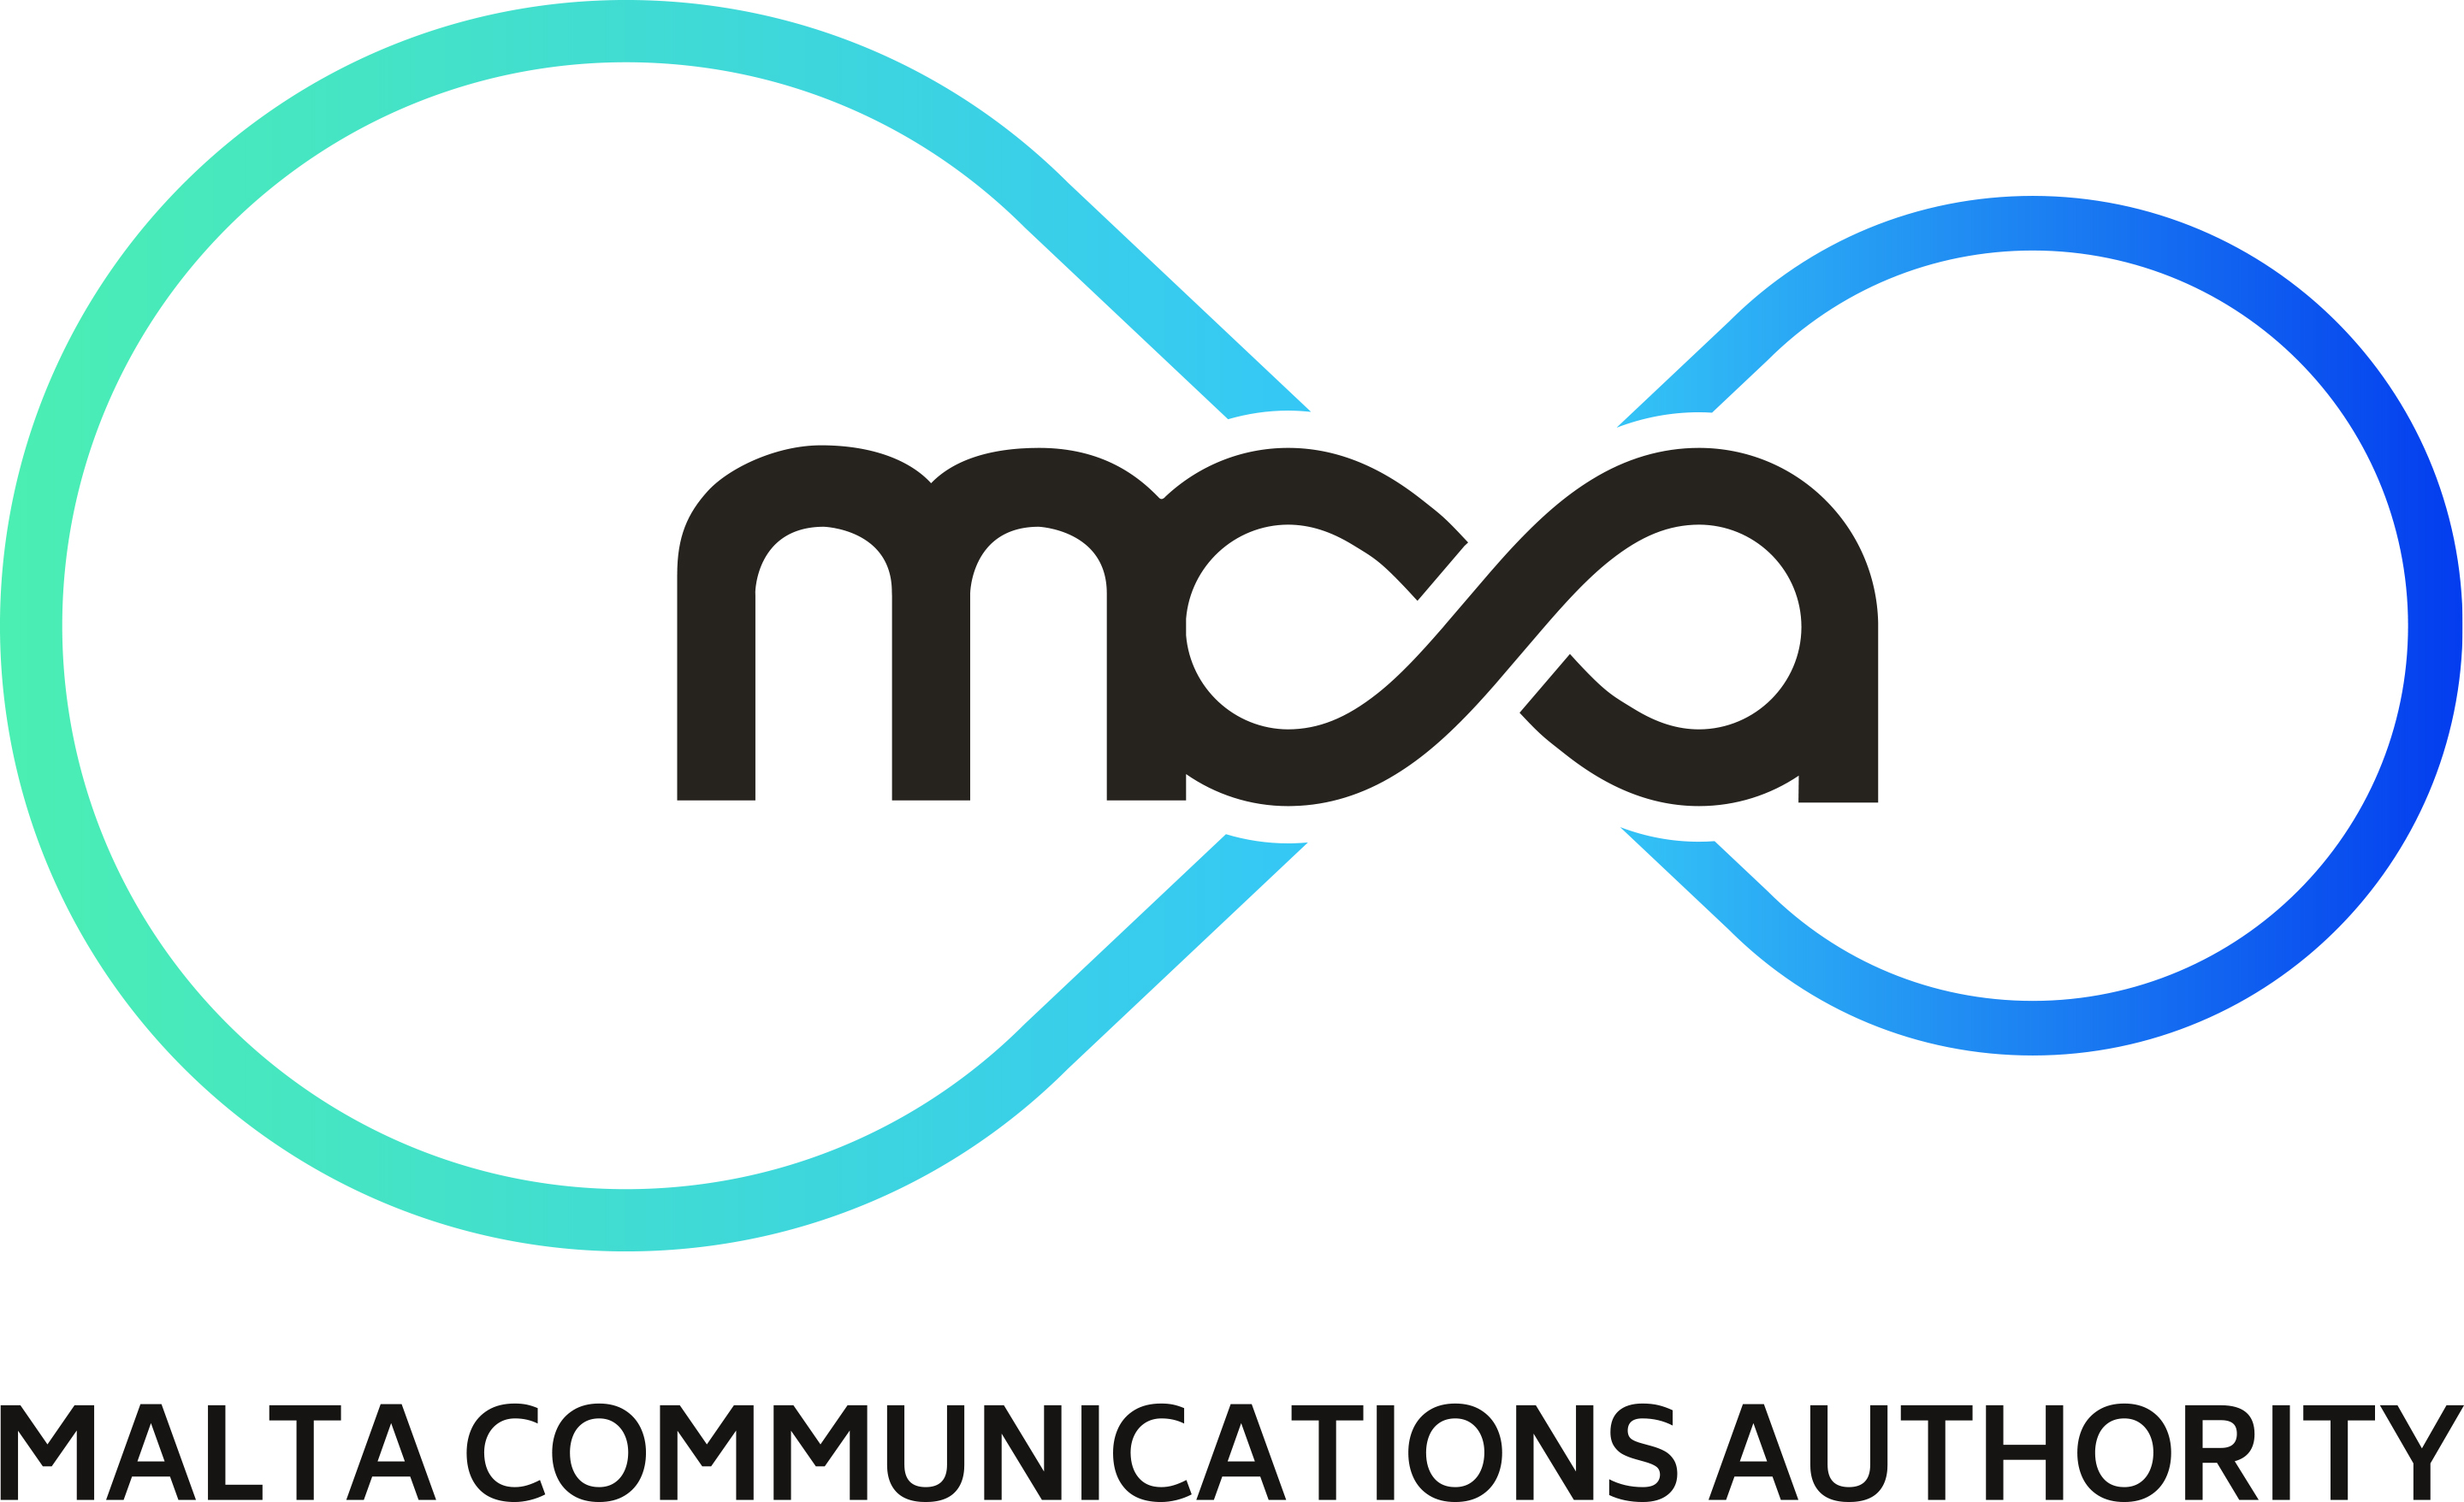 The image shows the MCA logoMalta